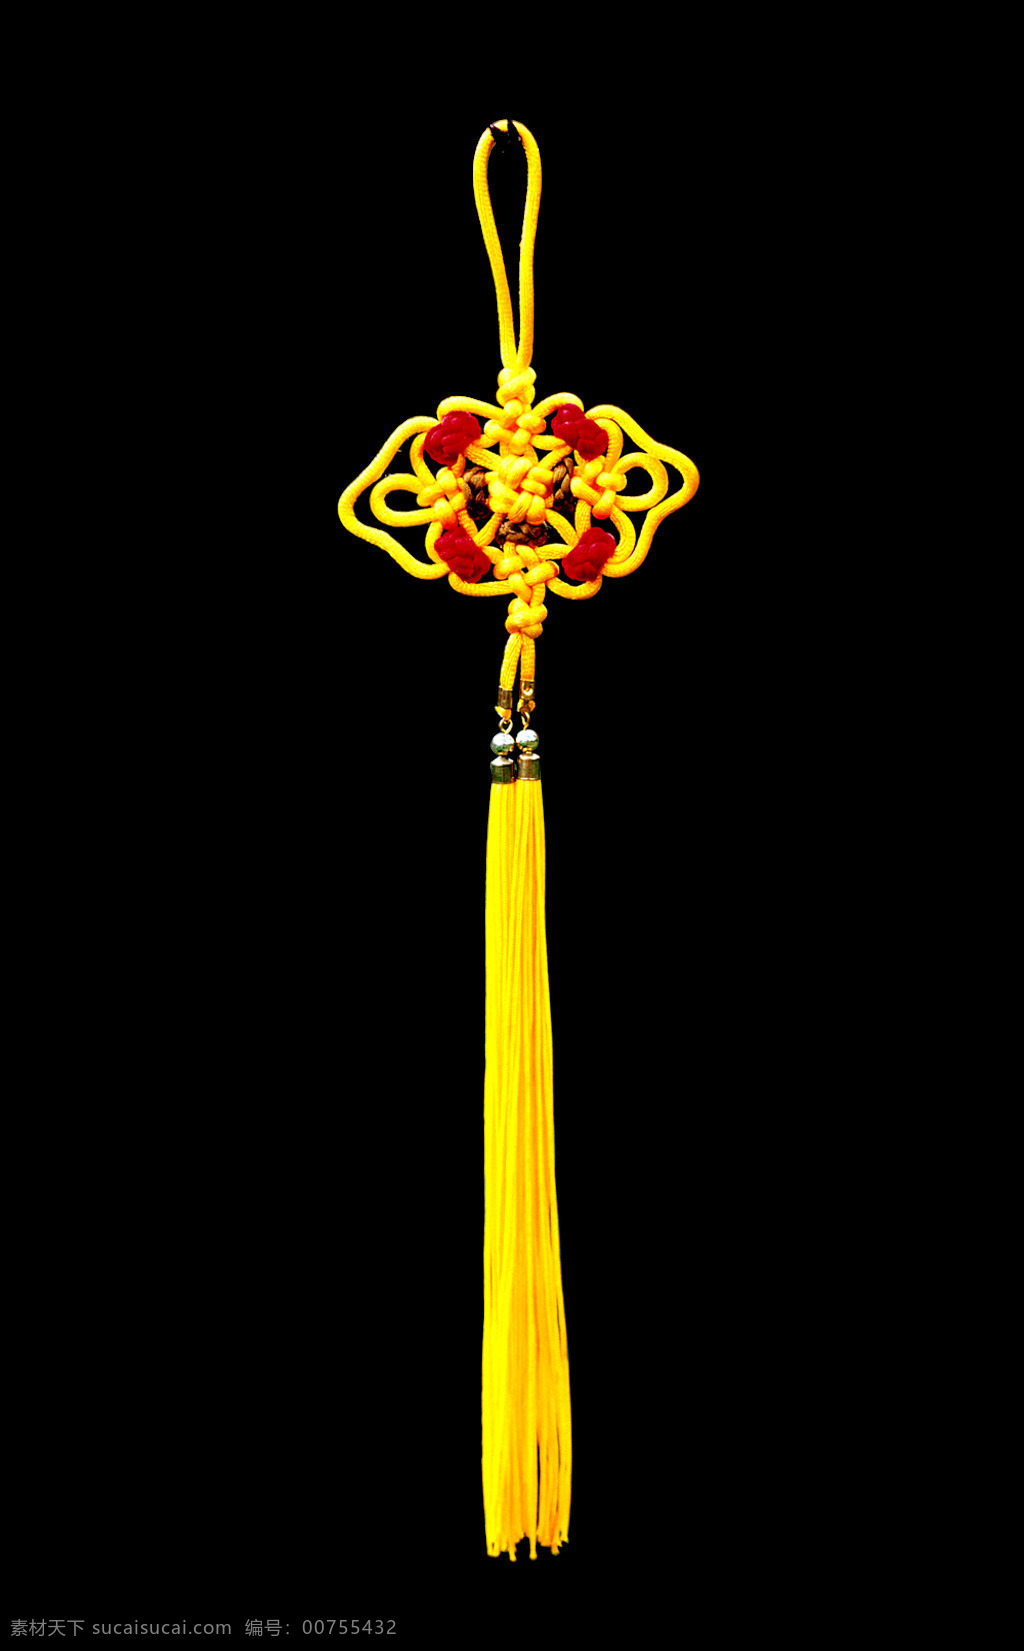 金色 特色 串 红 磁 珠 中国结 元素 传统挂饰 传统文化 创意挂饰 吉庆有余 平安结 特色挂饰